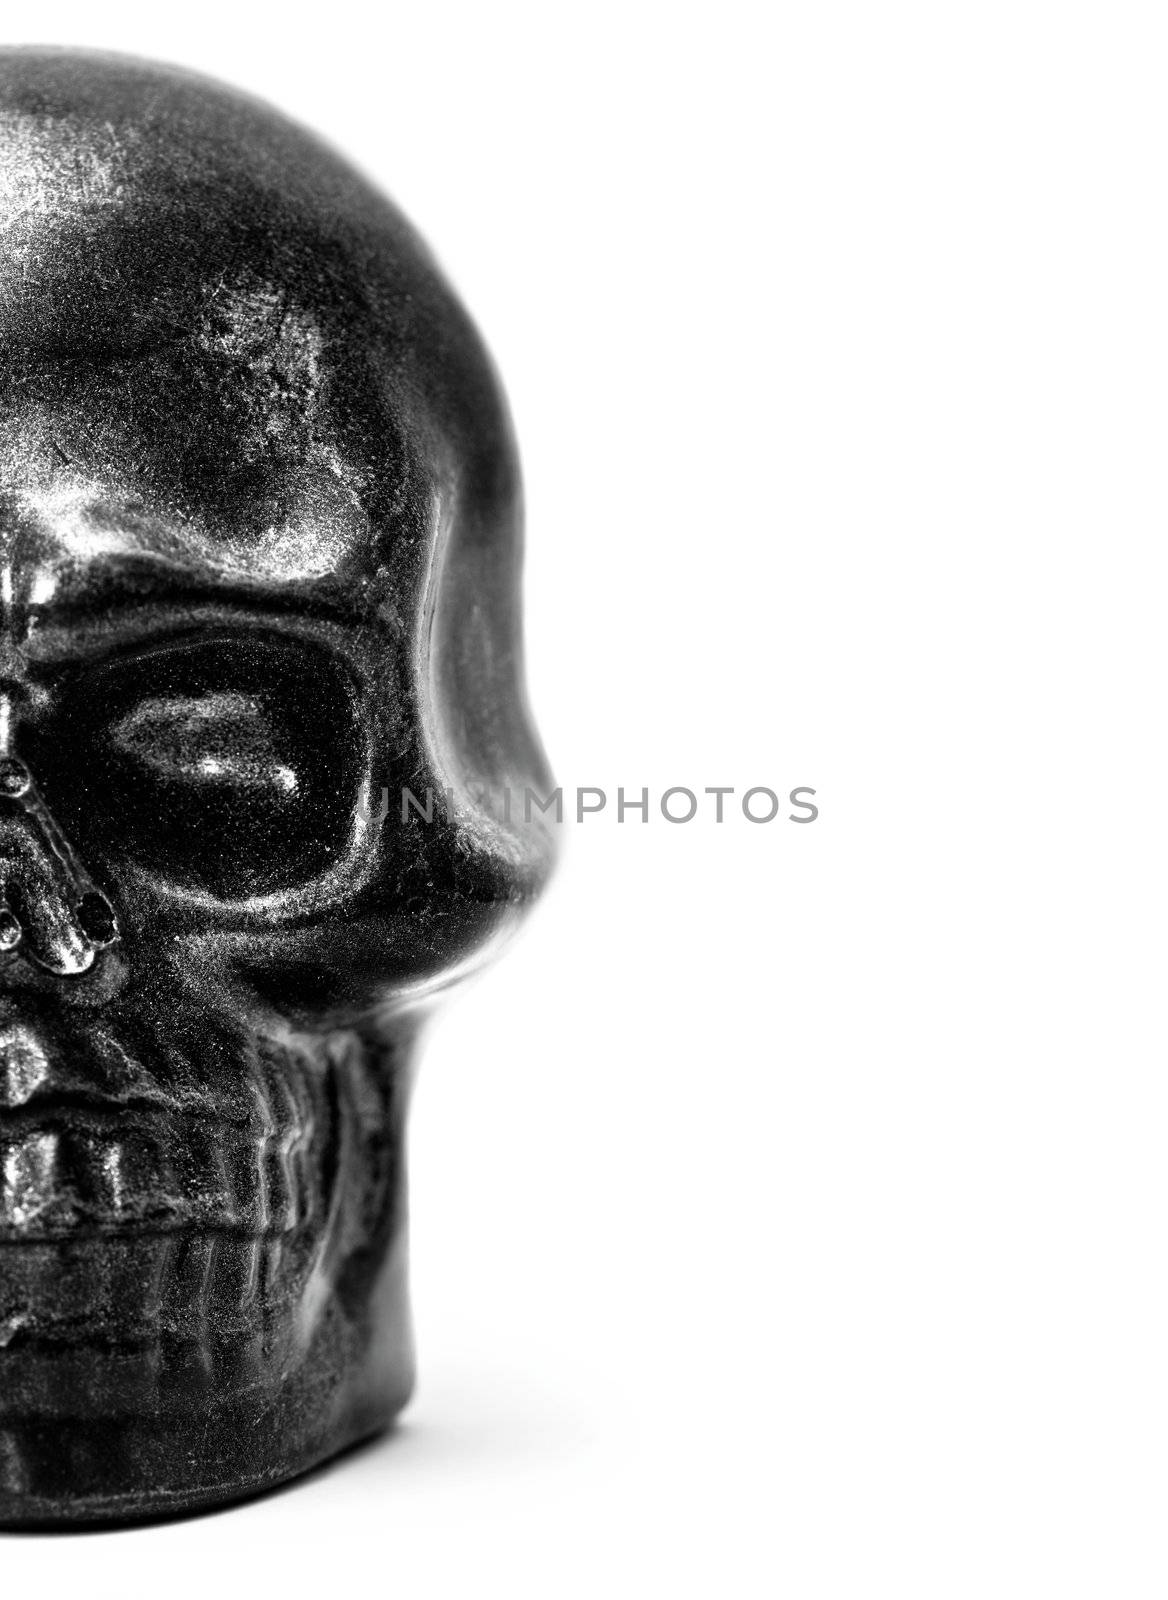 Half skull model in black and white